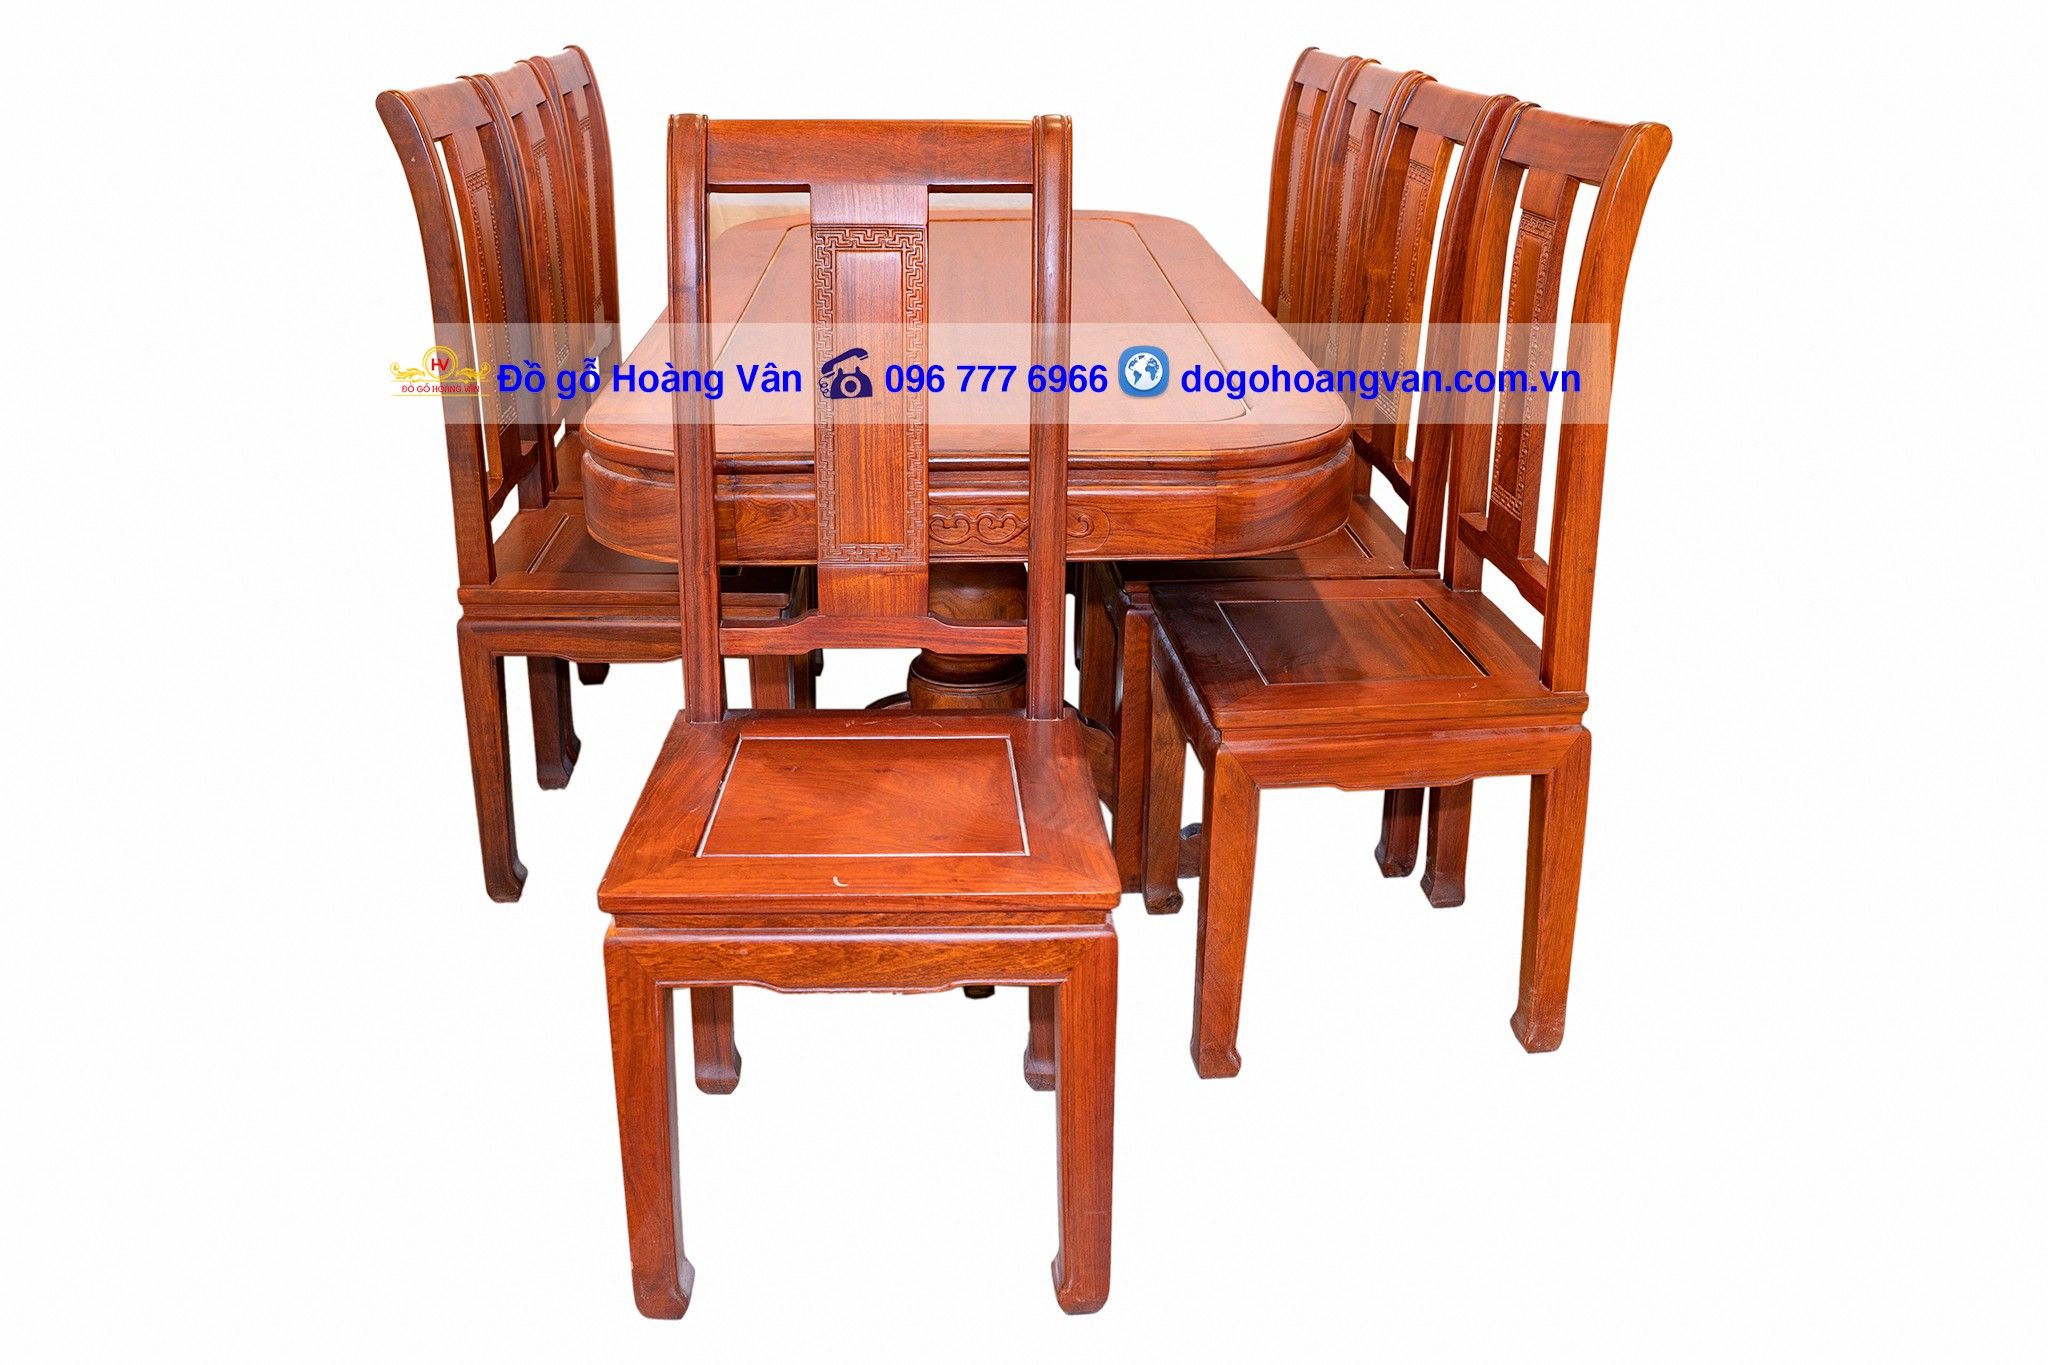 Bộ bàn ăn đẹp đơn giản kiểu bàn bầu dục BA36 – Đồ gỗ Hoàng Vân